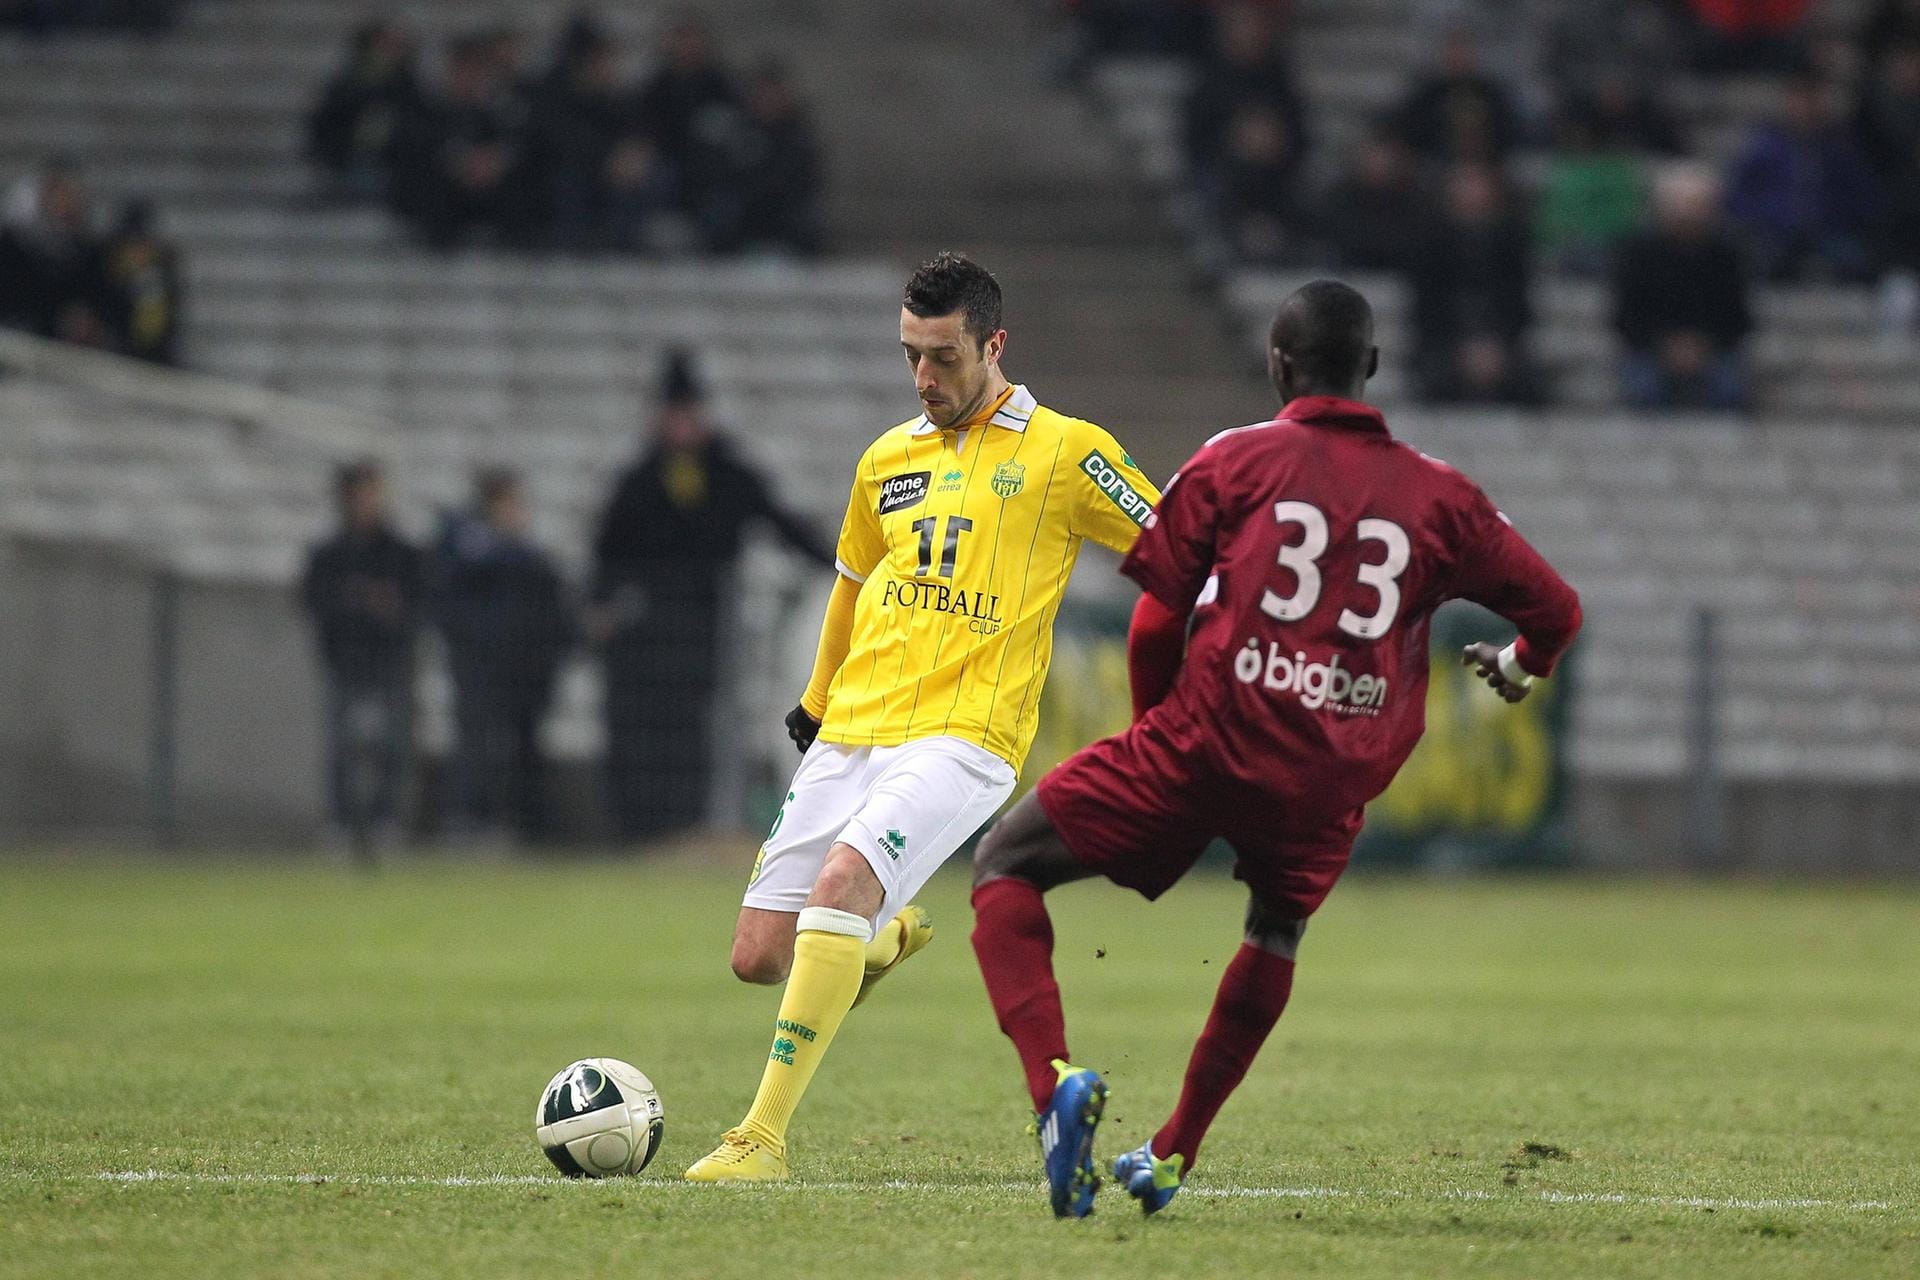 Erste Europa-Station: Sadio Mané (Nummer 33) startete 2011 sein Europa-Abenteuer beim FC Metz in Frankreich. Dort schaffte er den Sprung aus der Reservemannschaft in die zweite französische Liga. Dort gelang ihm in 19 Einsätzen ein Tor und eine Vorlage.